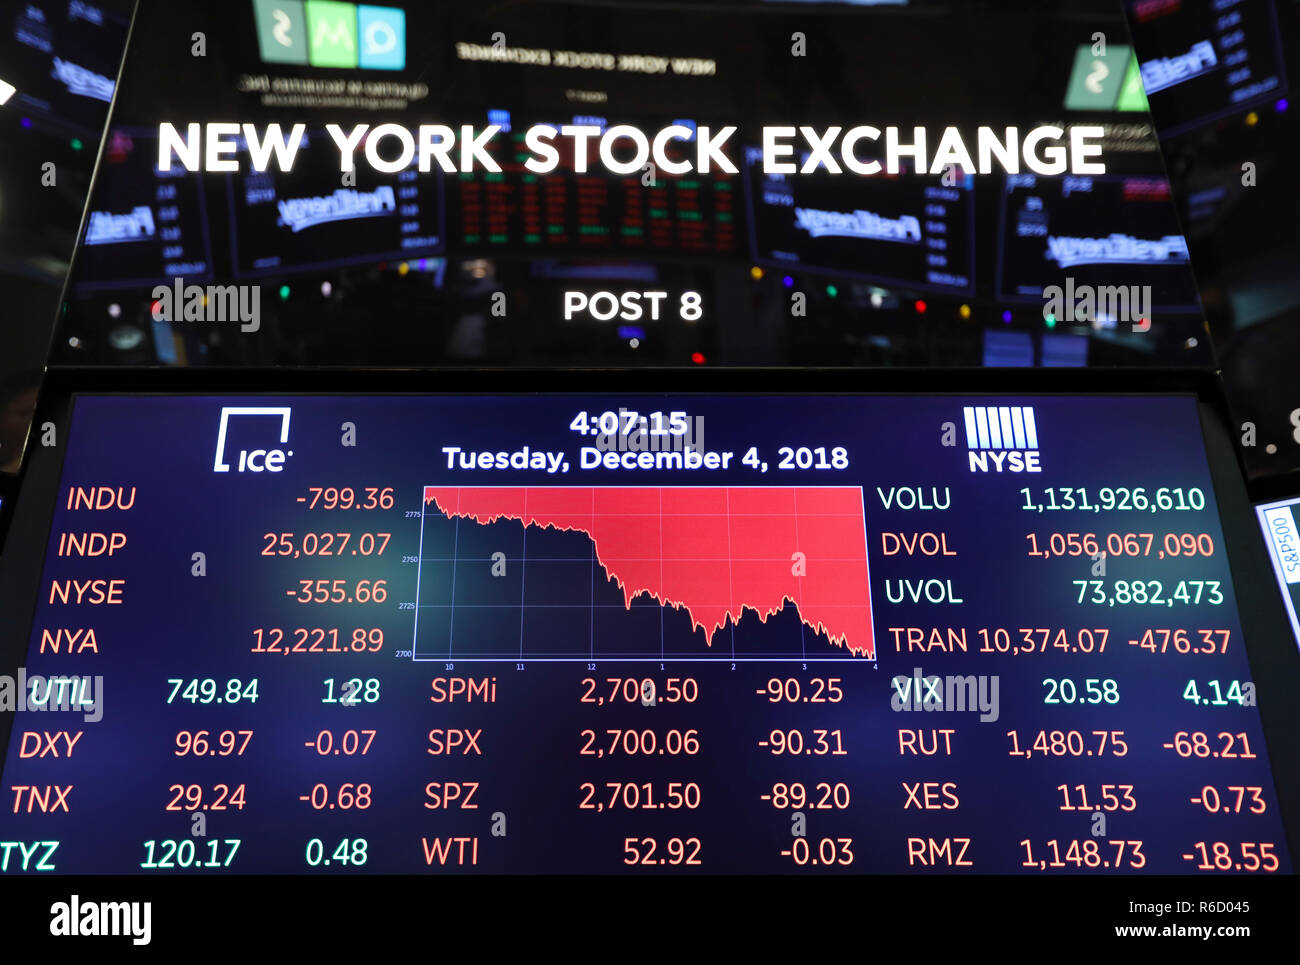 (181205) -- NEW YORK, Dicembre 5, 2018 (Xinhua) -- schermo elettronico mostra i numeri di chiusura del mercato azionario presso il New York Stock Exchange di New York, gli Stati Uniti il 4 dicembre, 2018. Gli stock degli Stati Uniti immerso il martedì, con tutti e tre i principali indici la cancellazione di più del 3 per cento, in mezzo alle preoccupazioni circa il invertiti curva di rendimento segnalazione di un possibile rallentamento economico. Il Dow Jones Industrial Average è diminuita 799.36 punti, o 3,10 percento, a 25,027.07. S&P 500 è diminuita 90.31 punti, o 3,24 percento, per 2,700.06. Il Nasdaq Composite Index è sceso 283.09 punti, o 3,80 percento, per 7,158.43. (Xinhua/Wang Yi Foto Stock